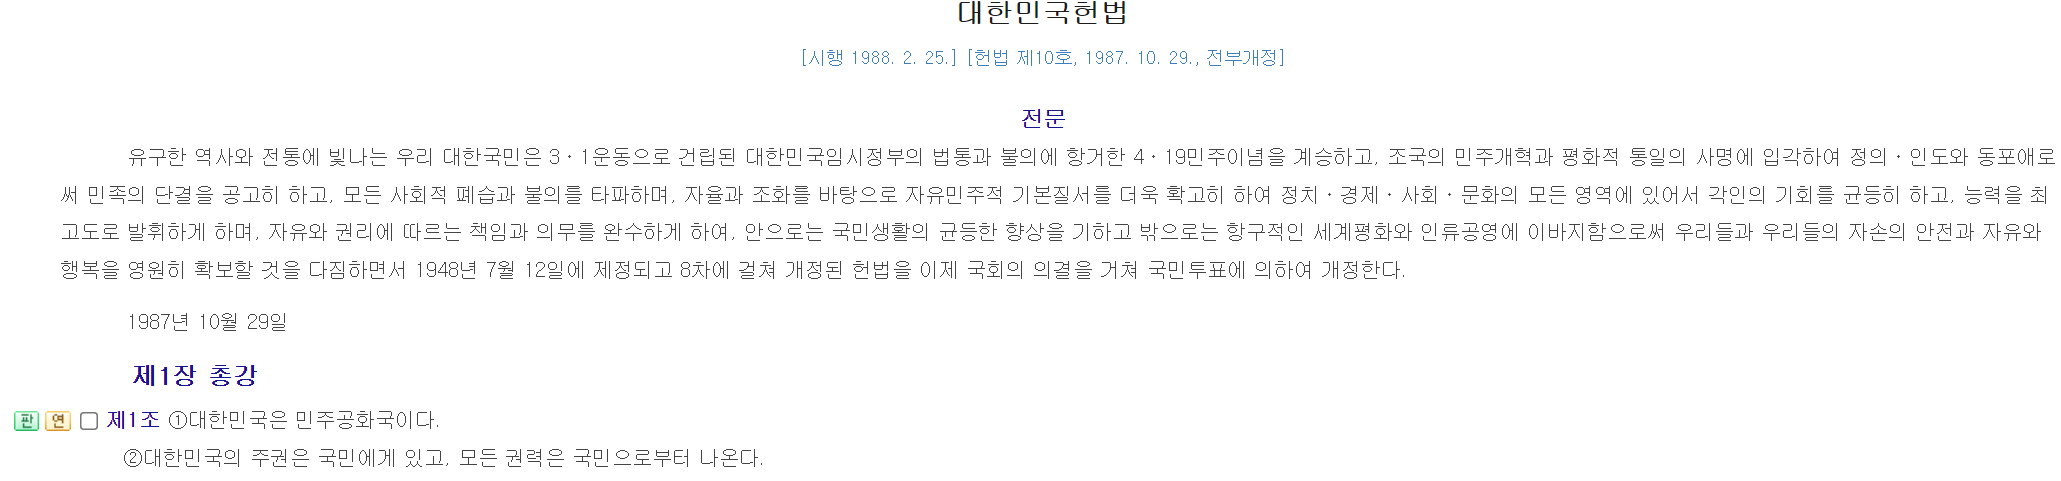 대한민국-헌법-제헌절